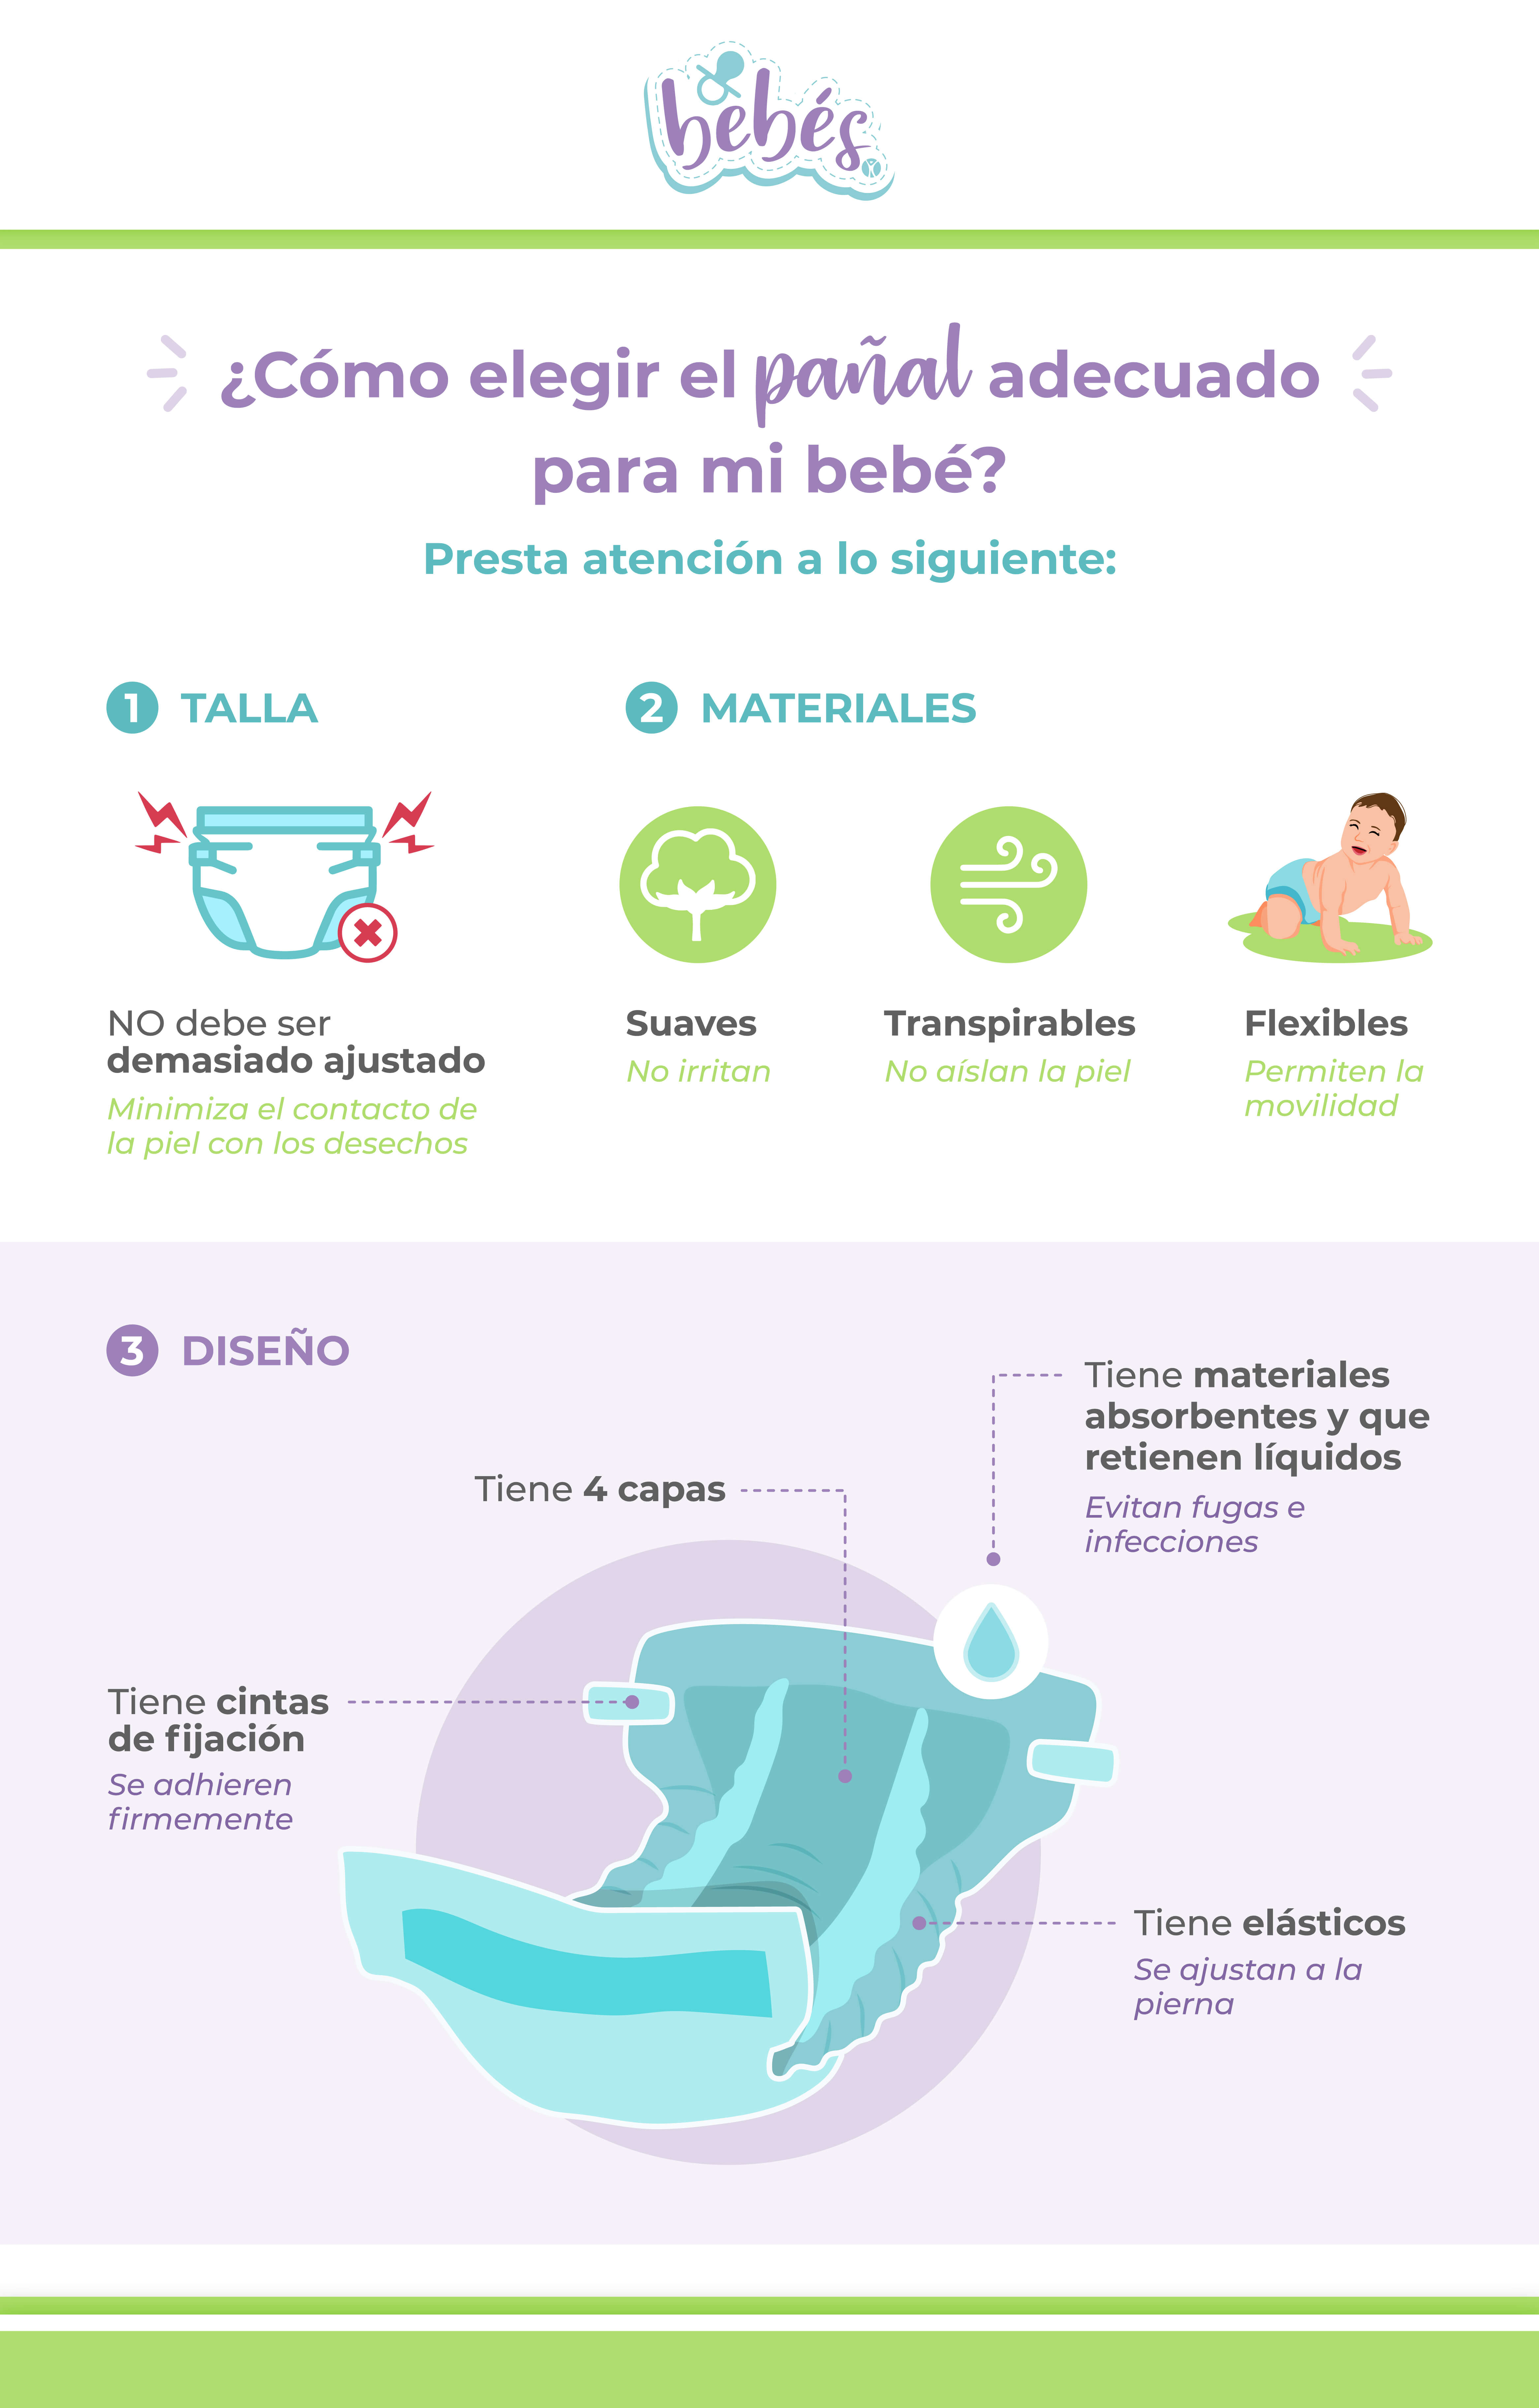 5 Juguetes para la estimulación temprana de tu bebé - Más Pañales